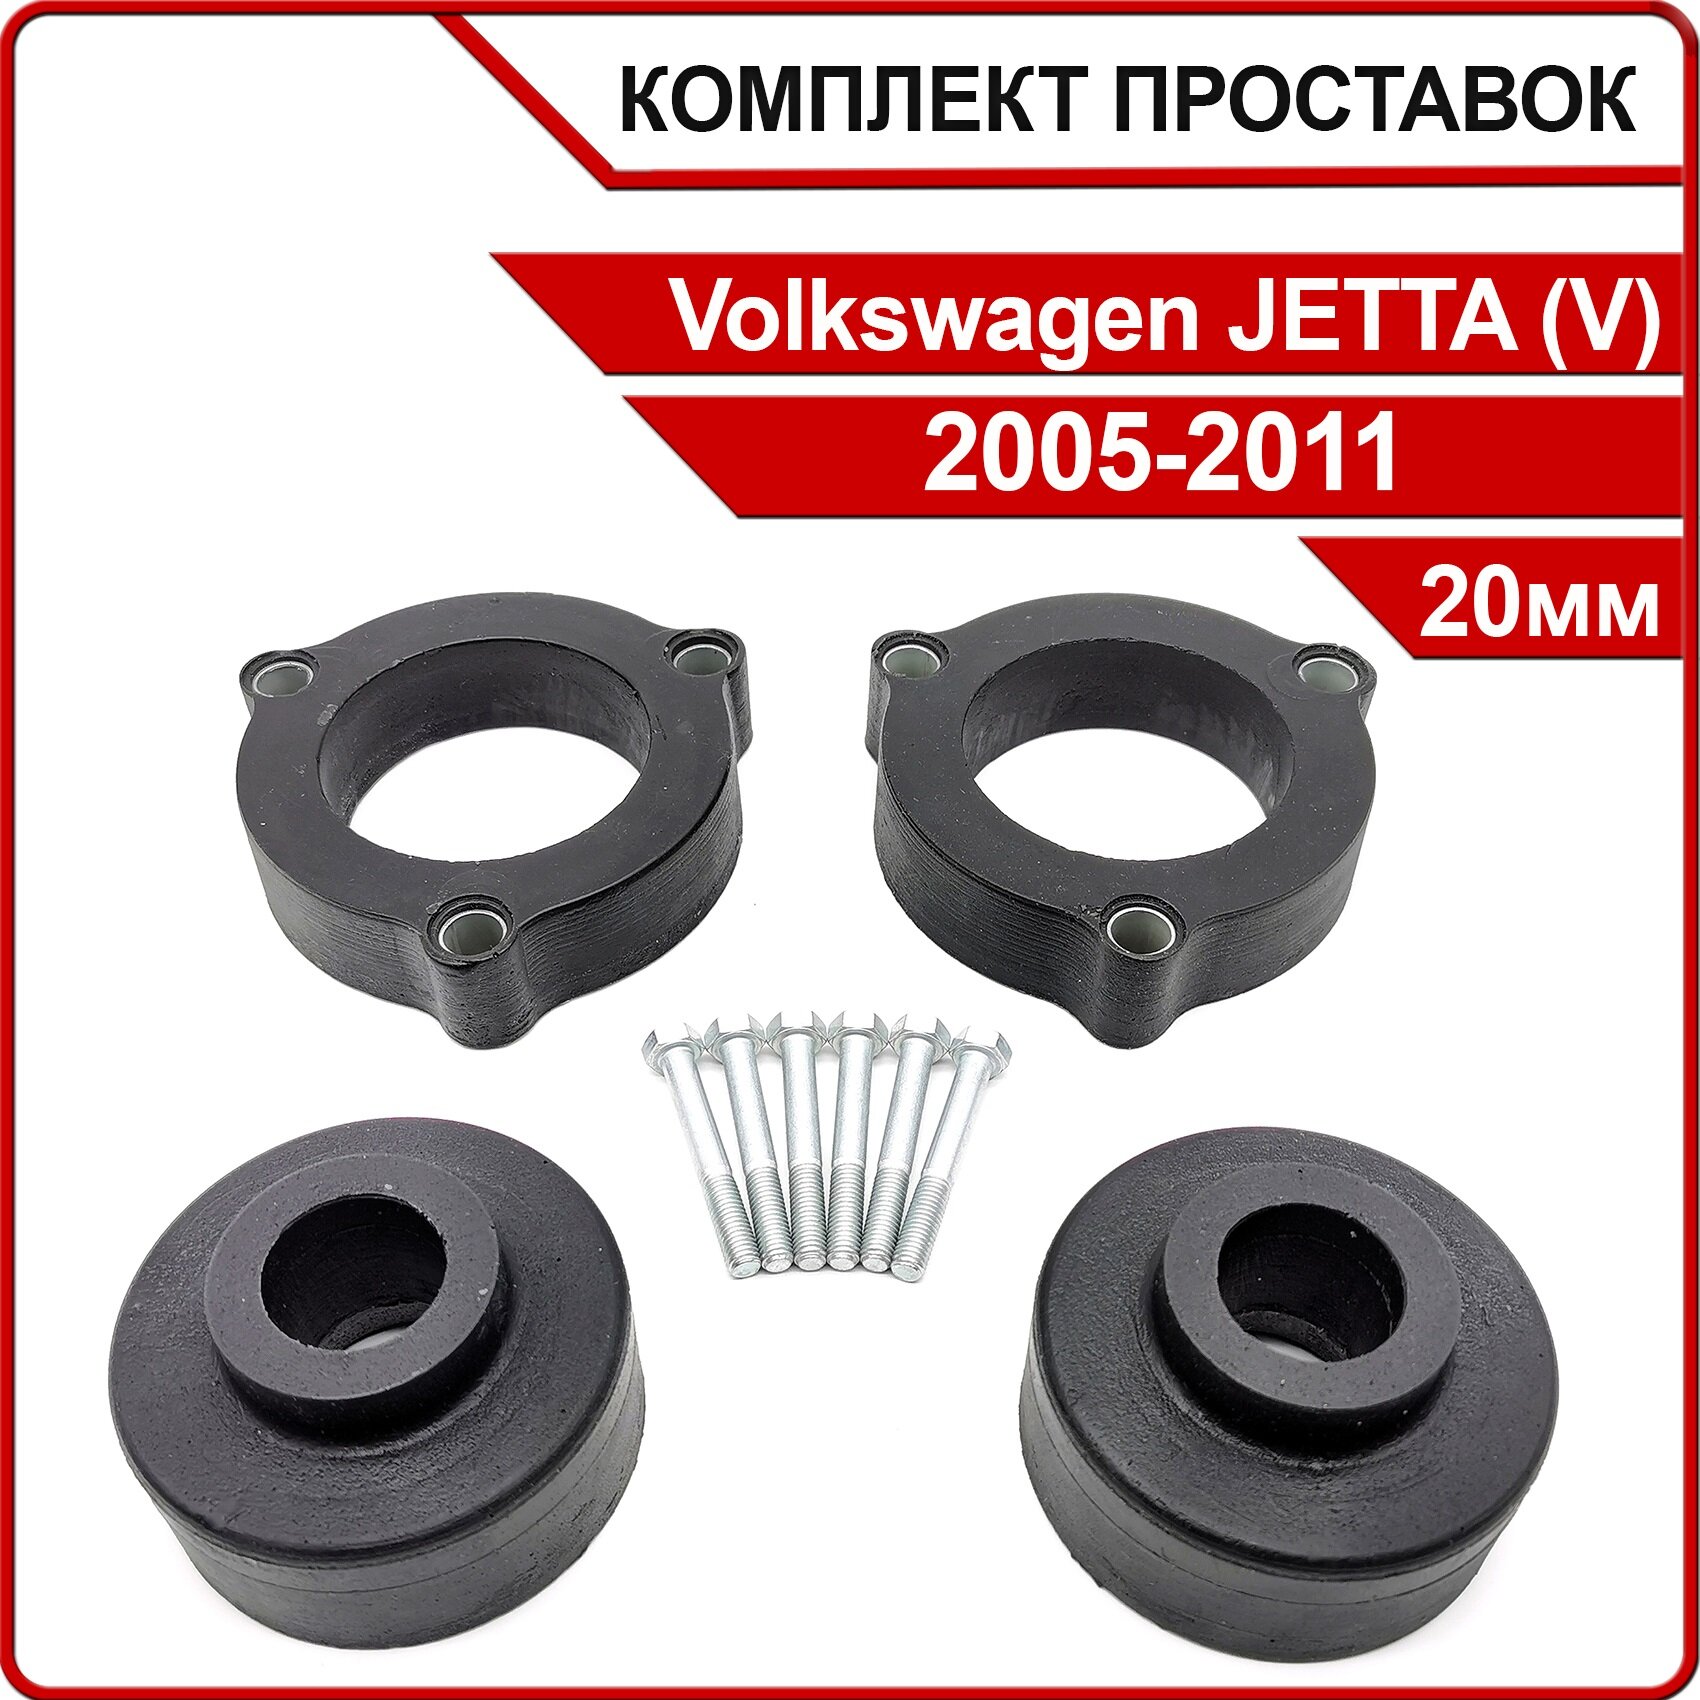 Комплект проставок 20мм для Volkswagen JETTA, (V), 2005-2011, полиуретан, 4шт / Автопроставка